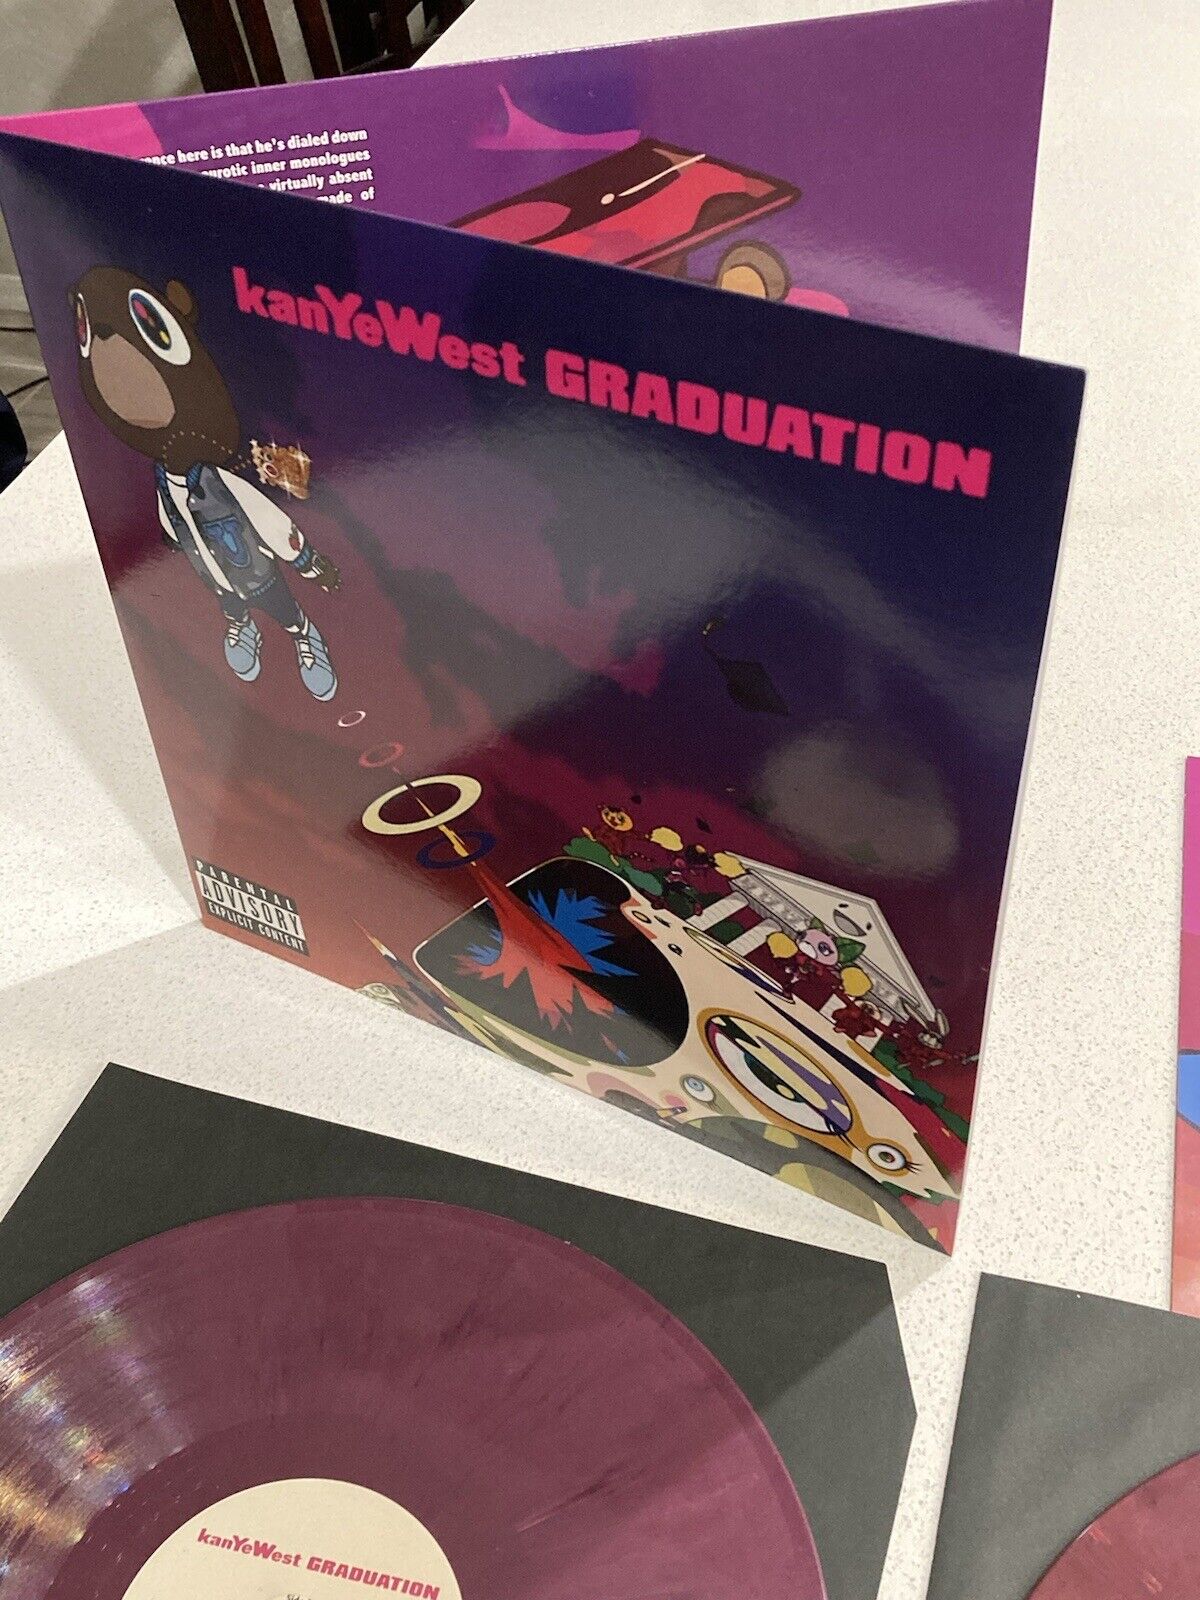 Kanye West graduation - New and Sealed - Gate fold album 🔥🔥🔥